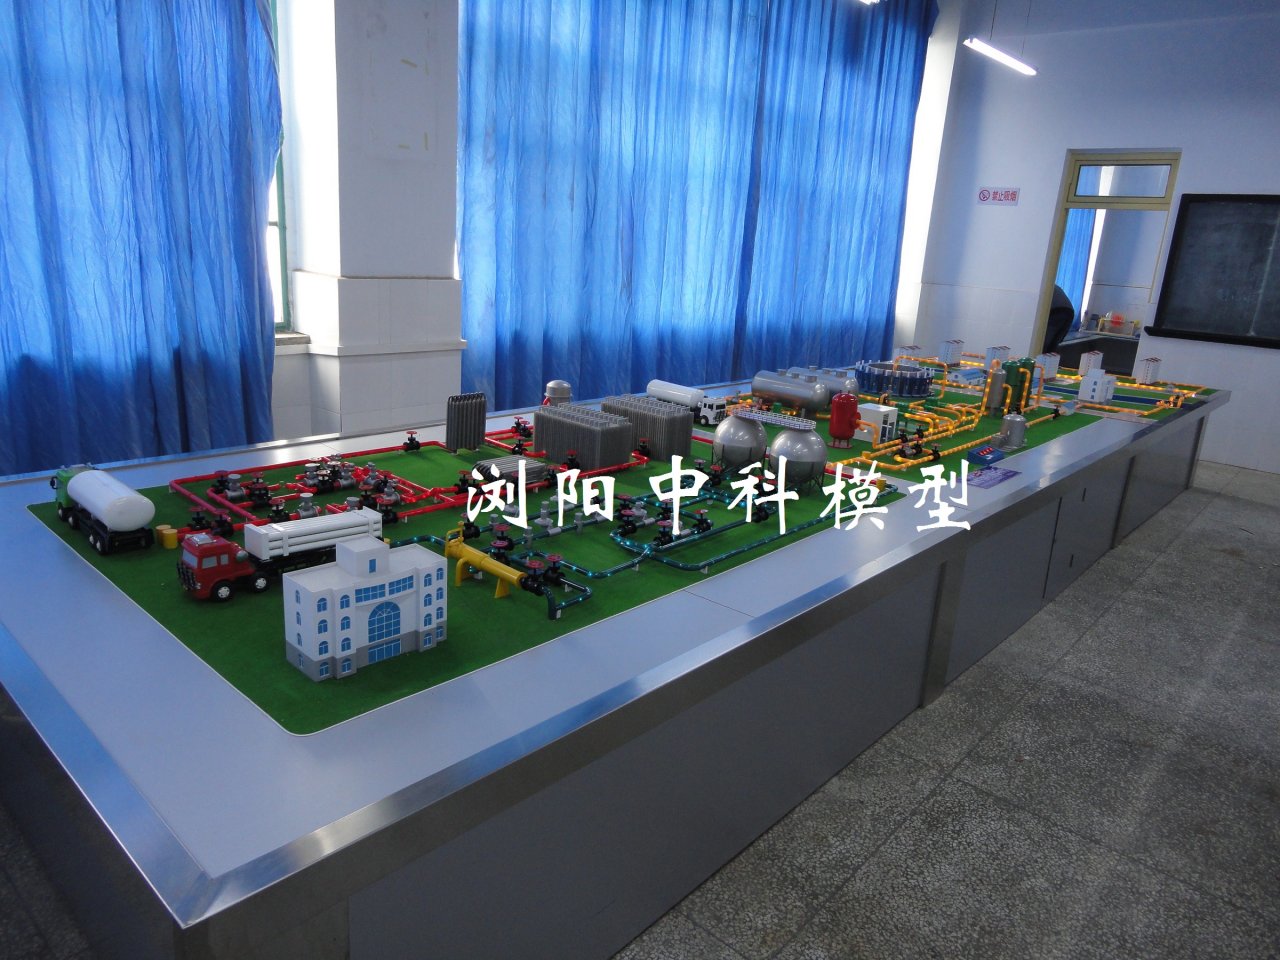 重庆大学城市燃气供应流程模型